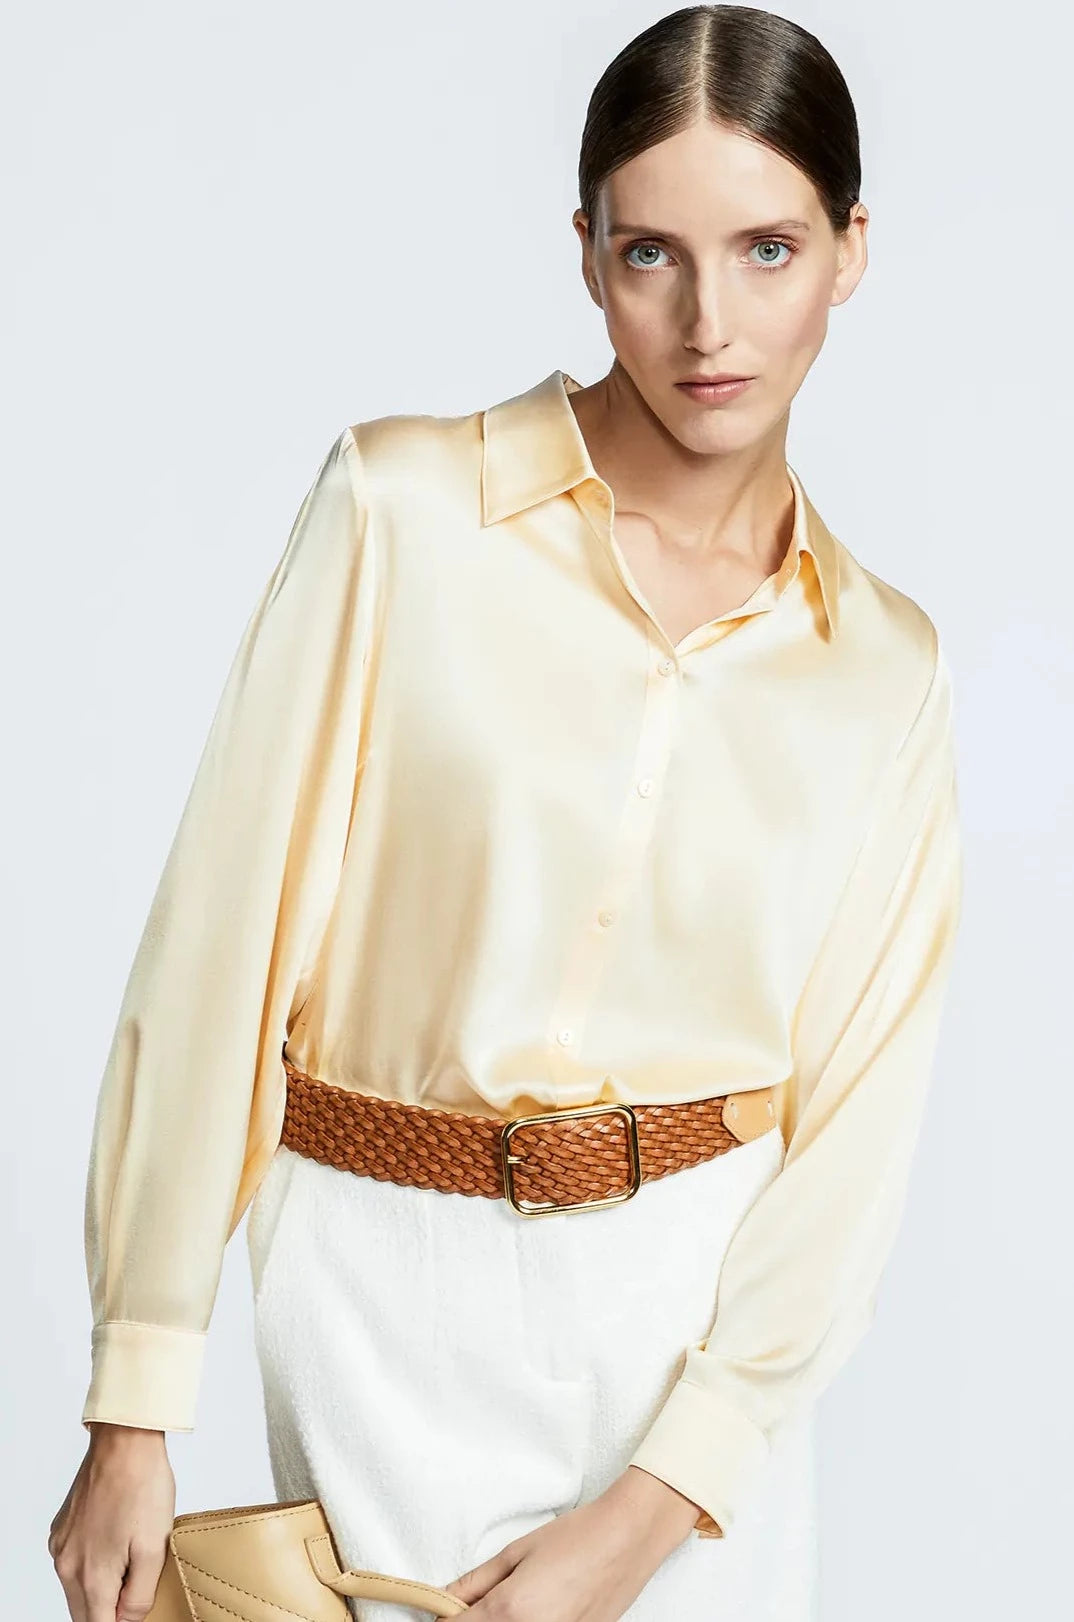 zijde blouse in vanilla - xandres - - grote maten - dameskleding - kledingwinkel - herent - leuven